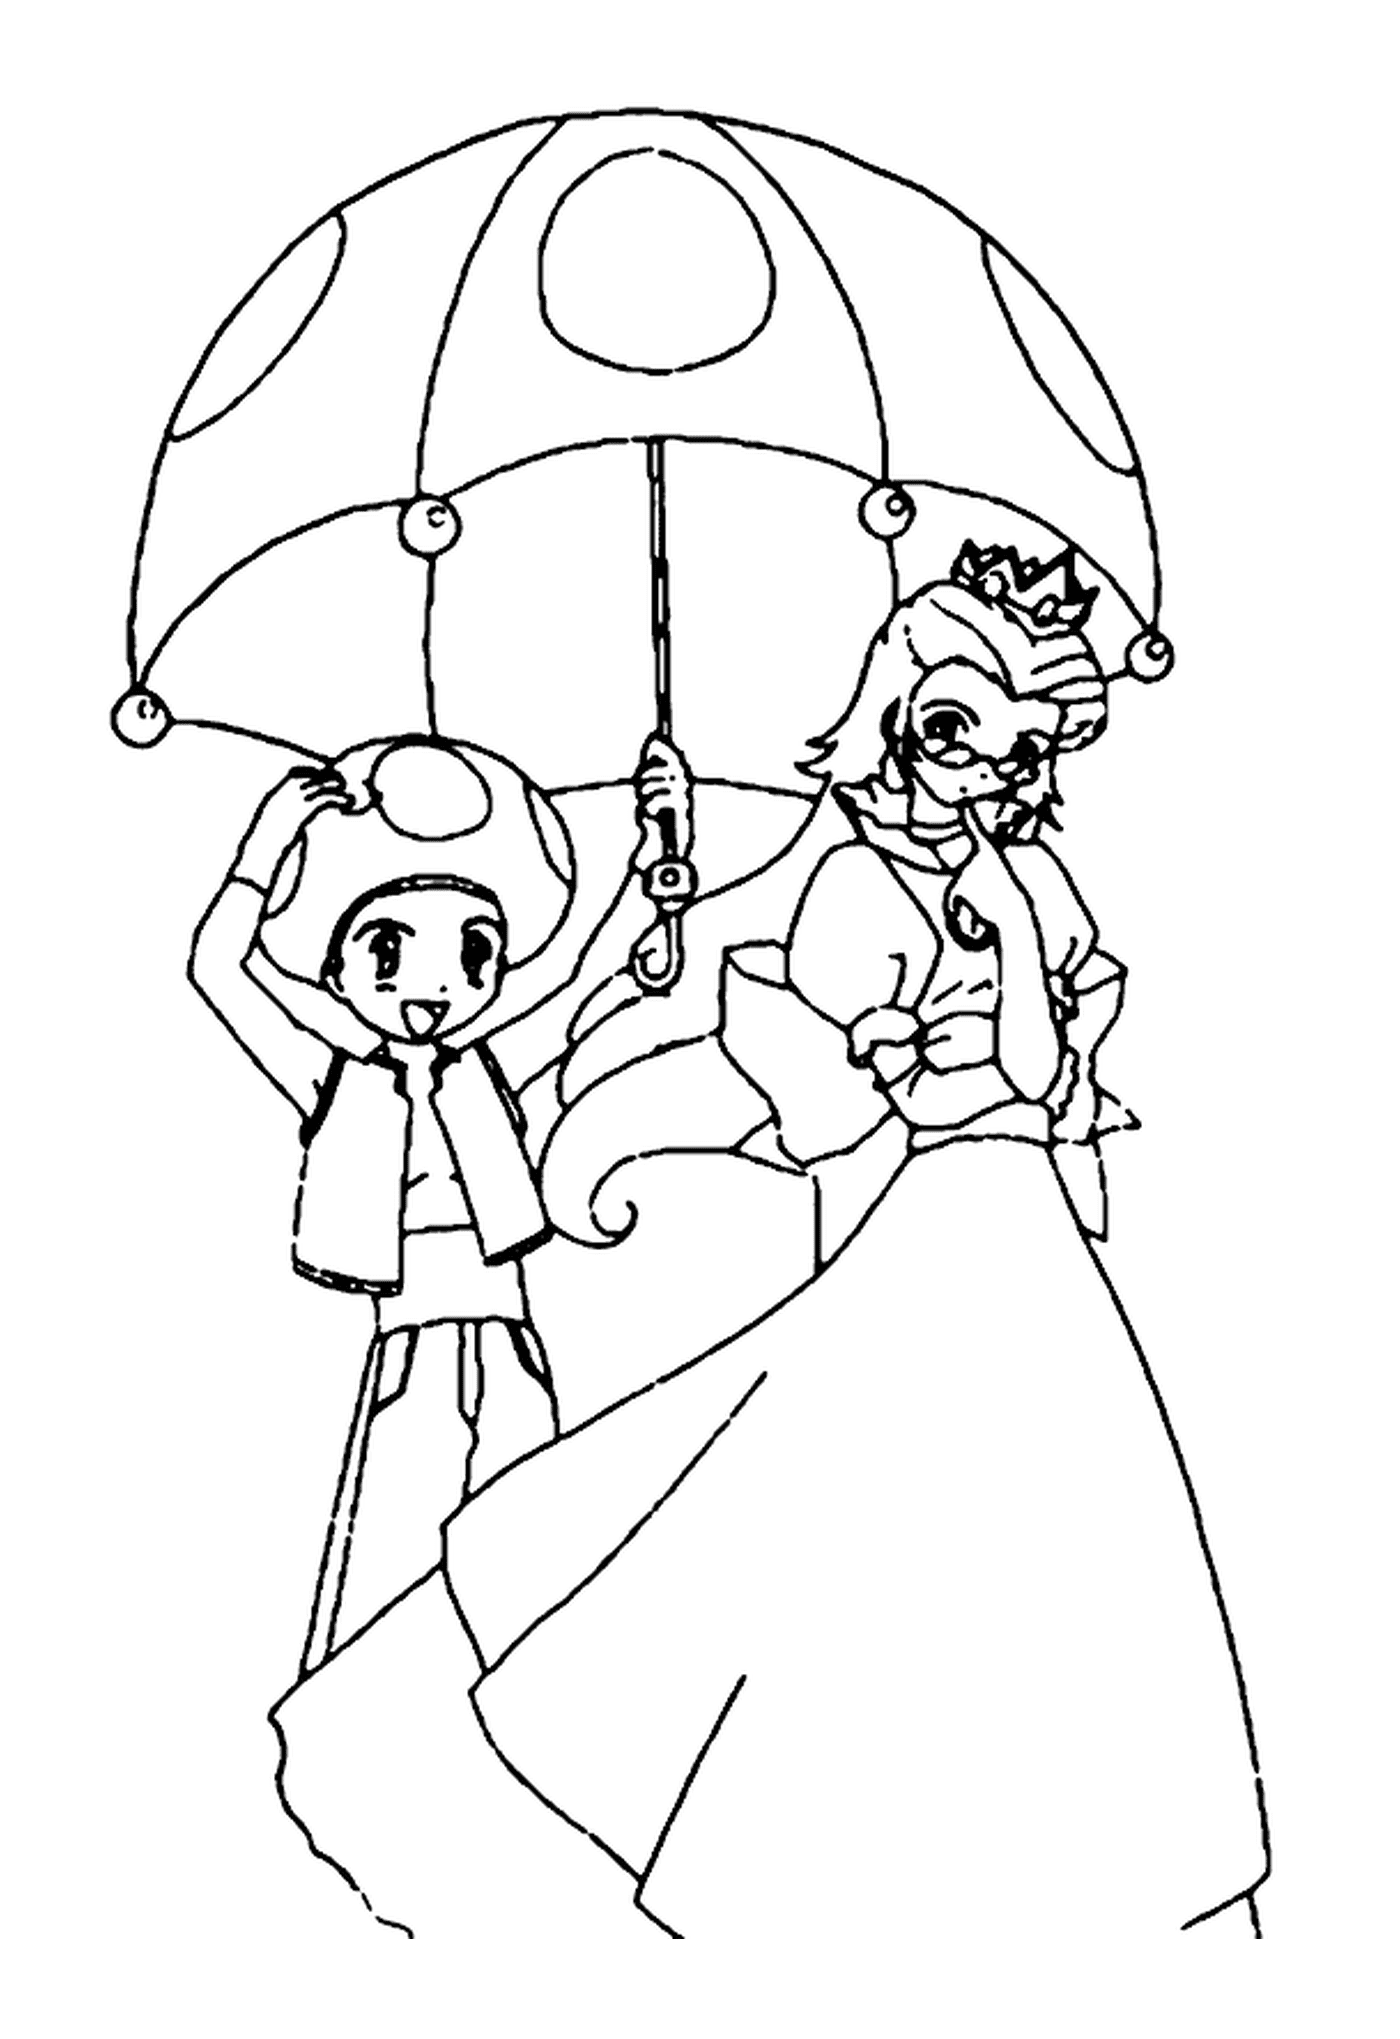  الأميرة و طواد، امرأة مسنة تحمل مظلة و صبي صغير يحمل مظلة 